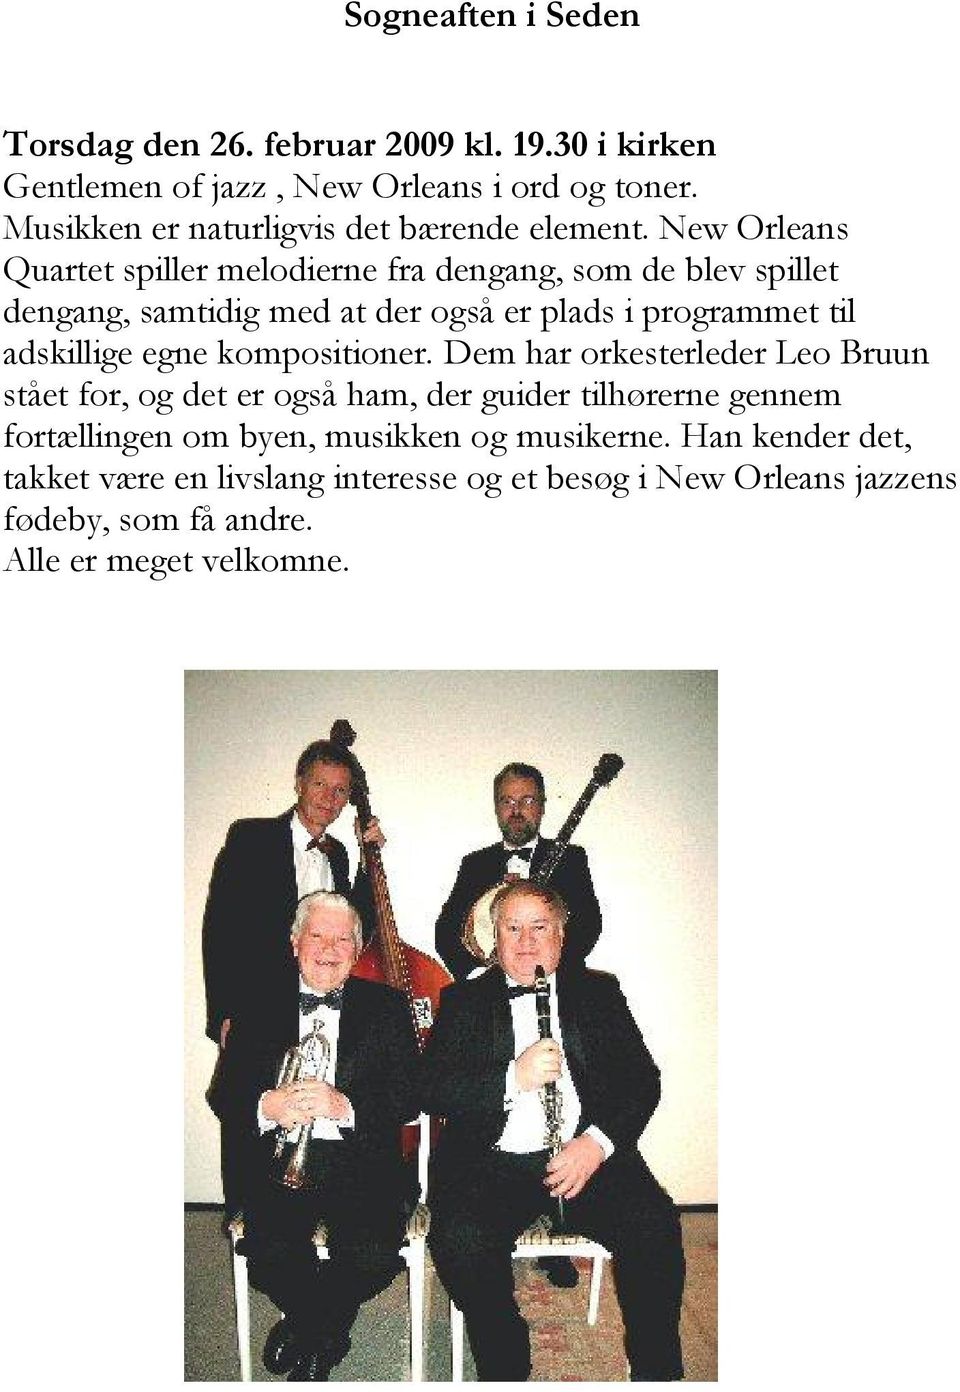 New Orleans Quartet spiller melodierne fra dengang, som de blev spillet dengang, samtidig med at der også er plads i programmet til adskillige